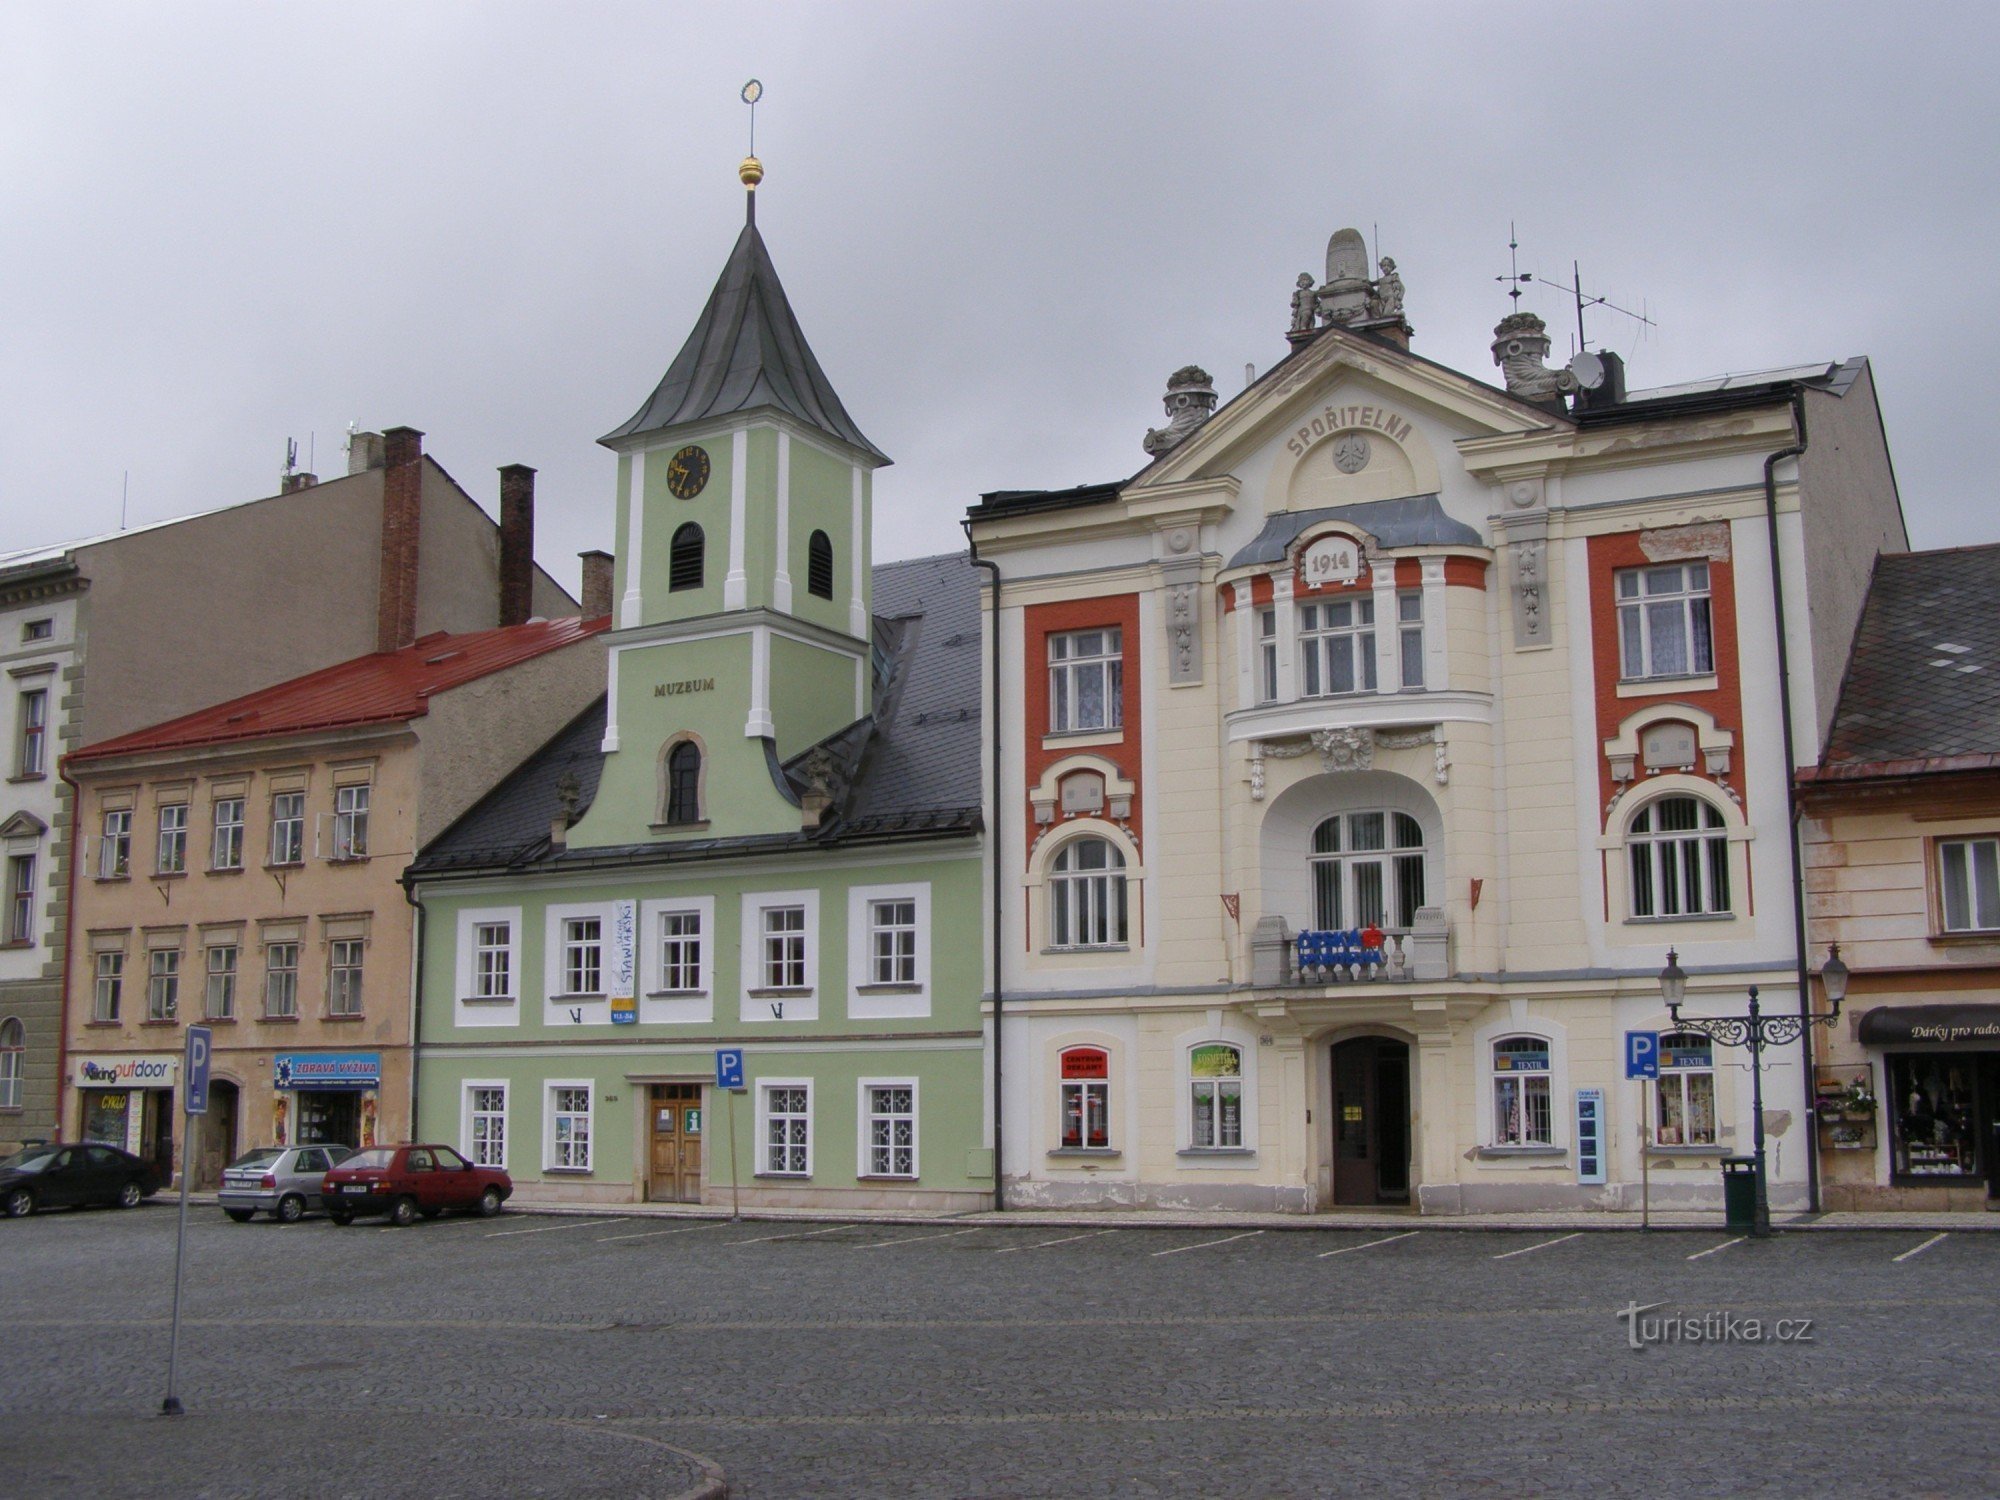 Králíky - Velké náměstí, museum en spaarbank